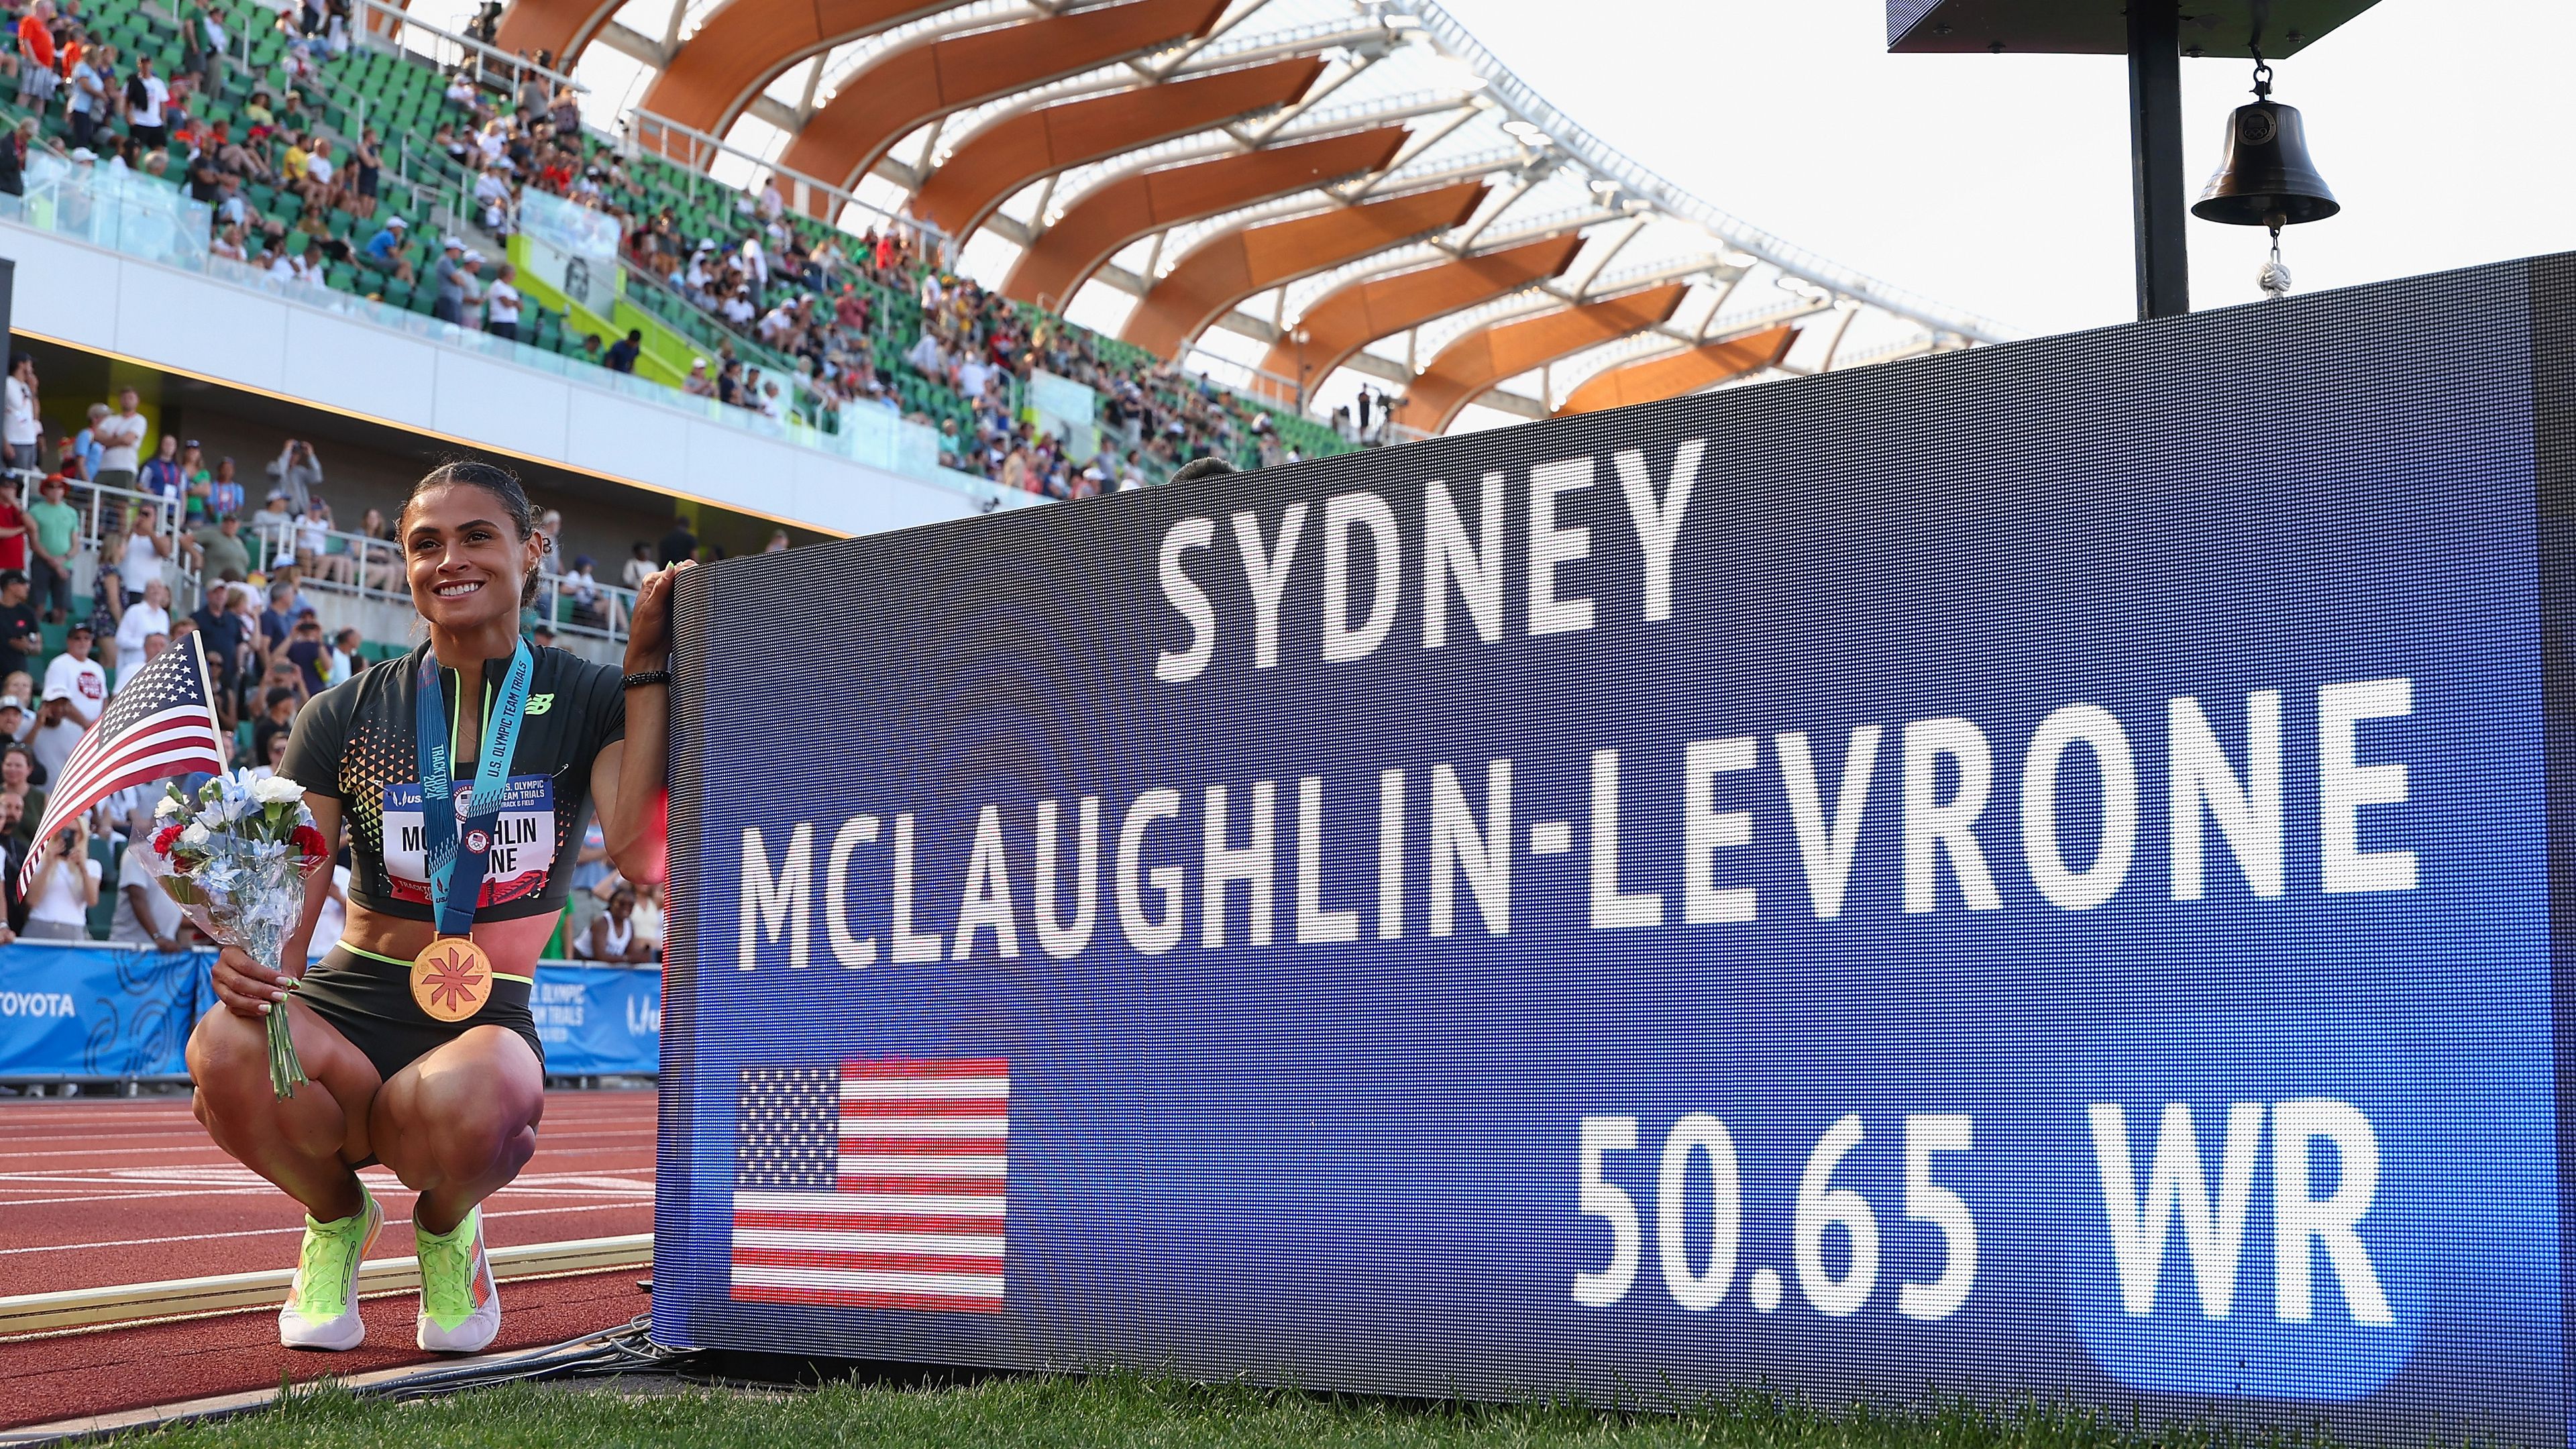 Sydney McLaughlin-Levrone világcsúcsot ért el